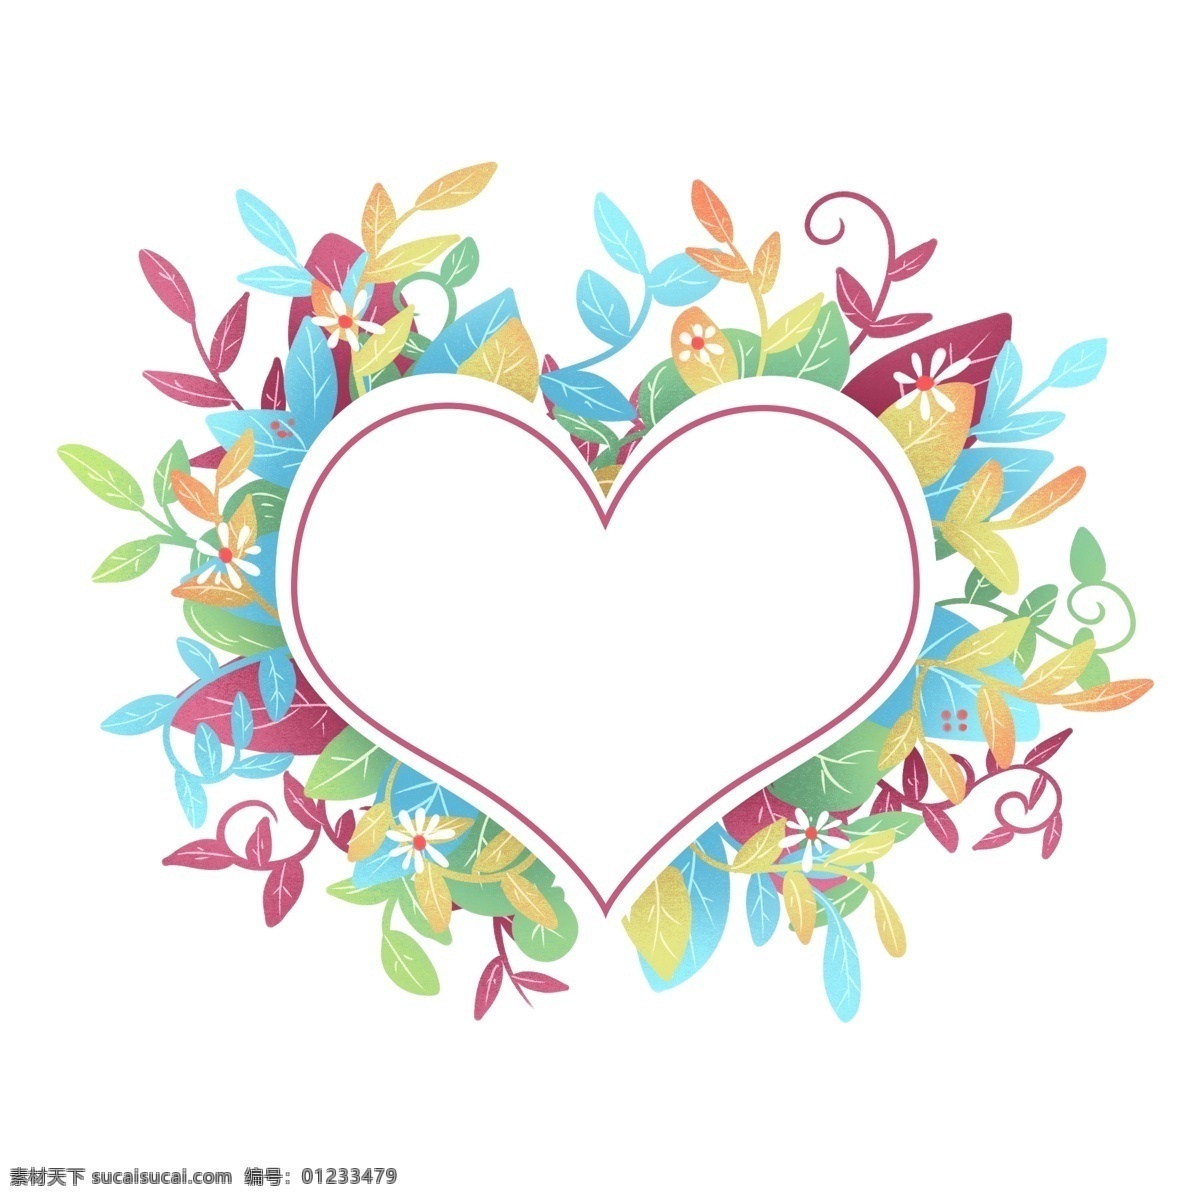 心形 手绘 植物 边框 妇女节 七夕 情人节 植物边框 三八 主题背景